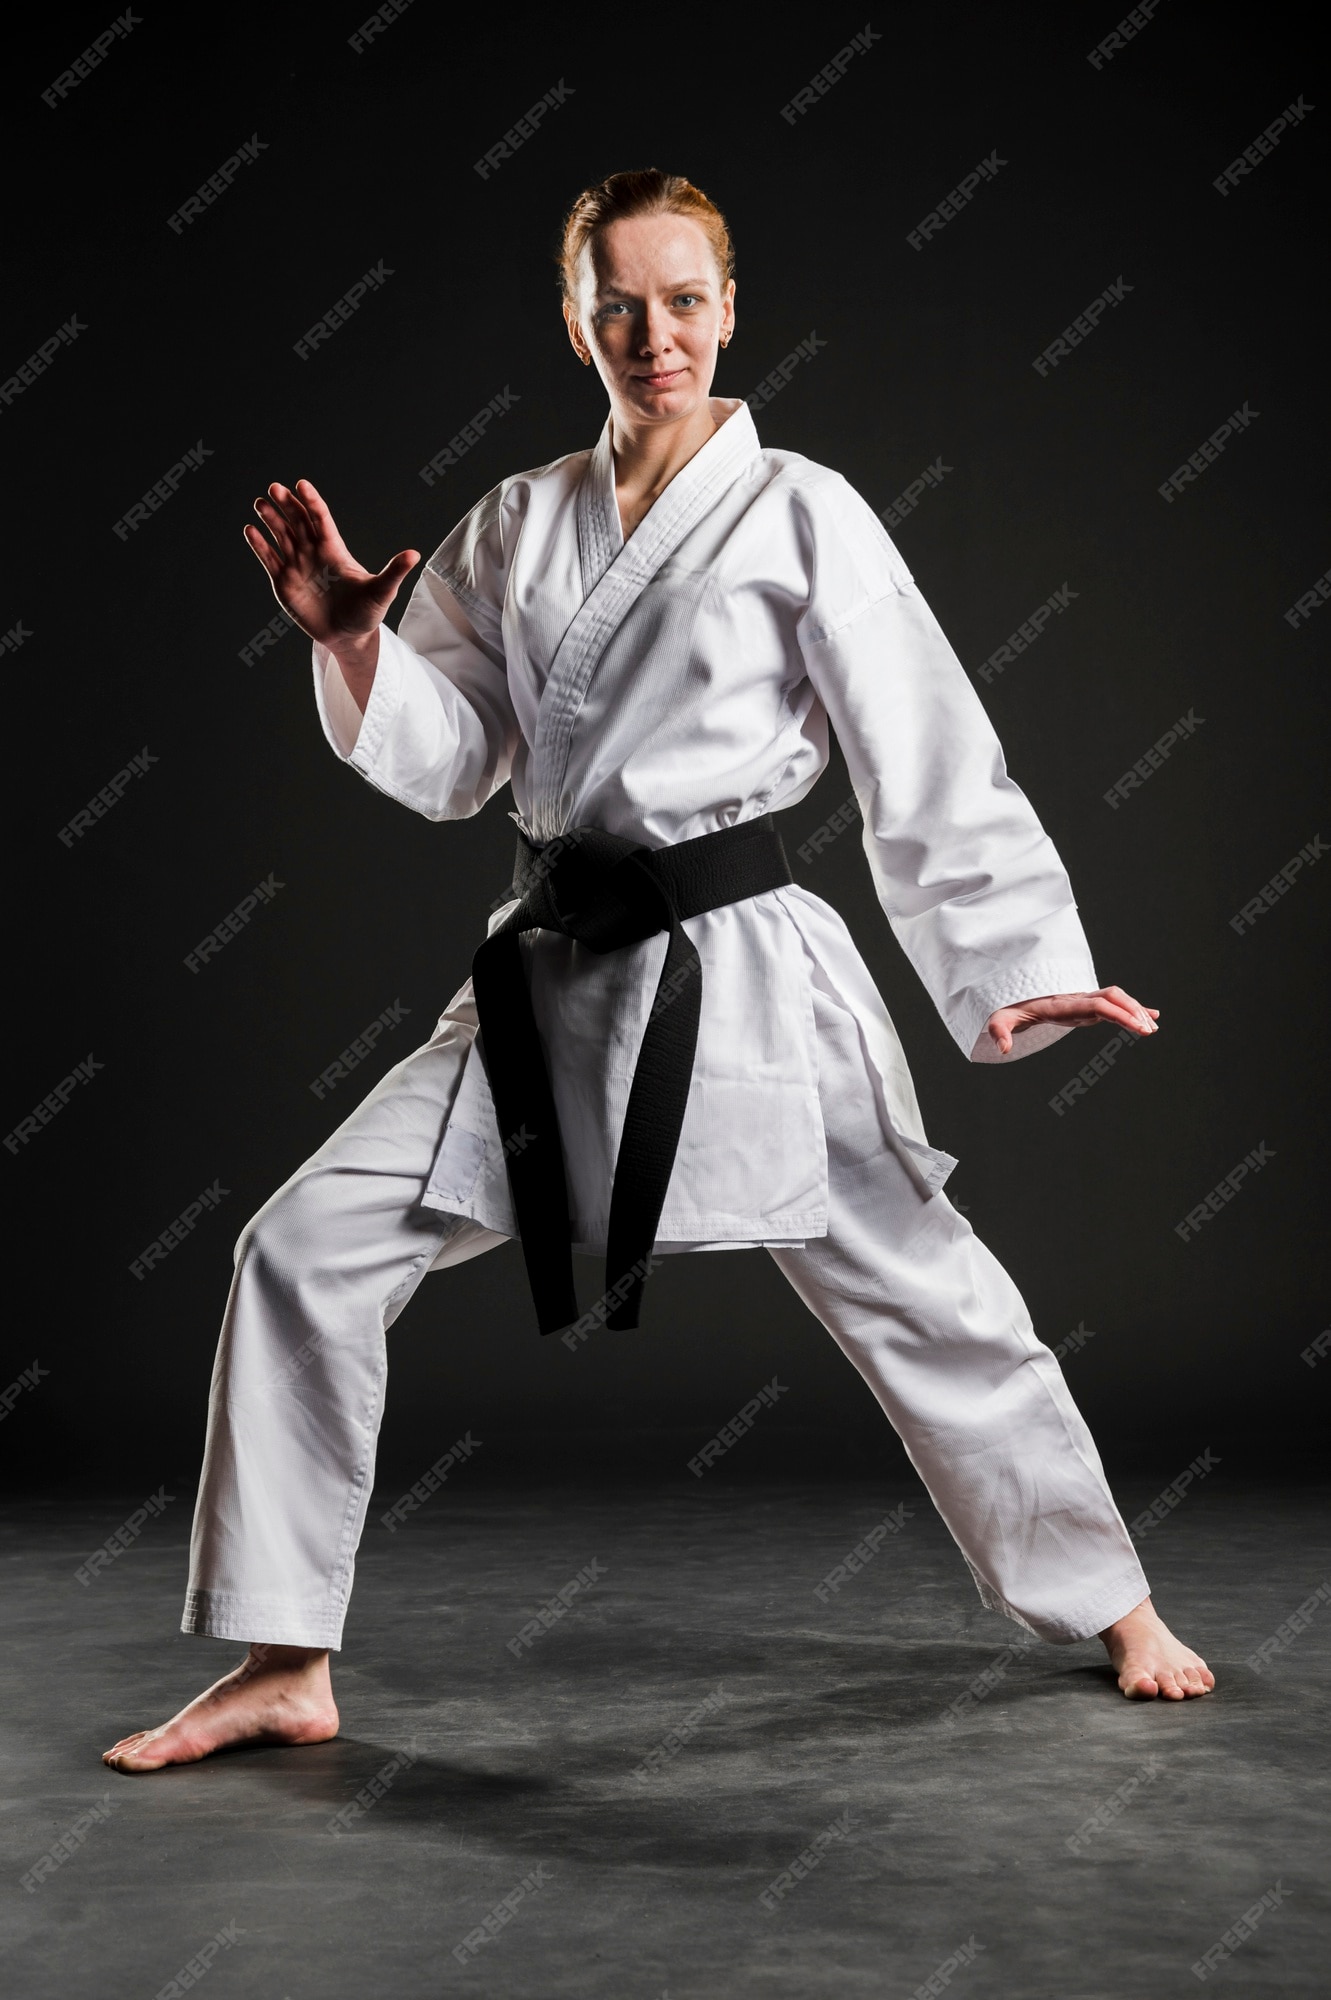 Free Photo | Woman in karate